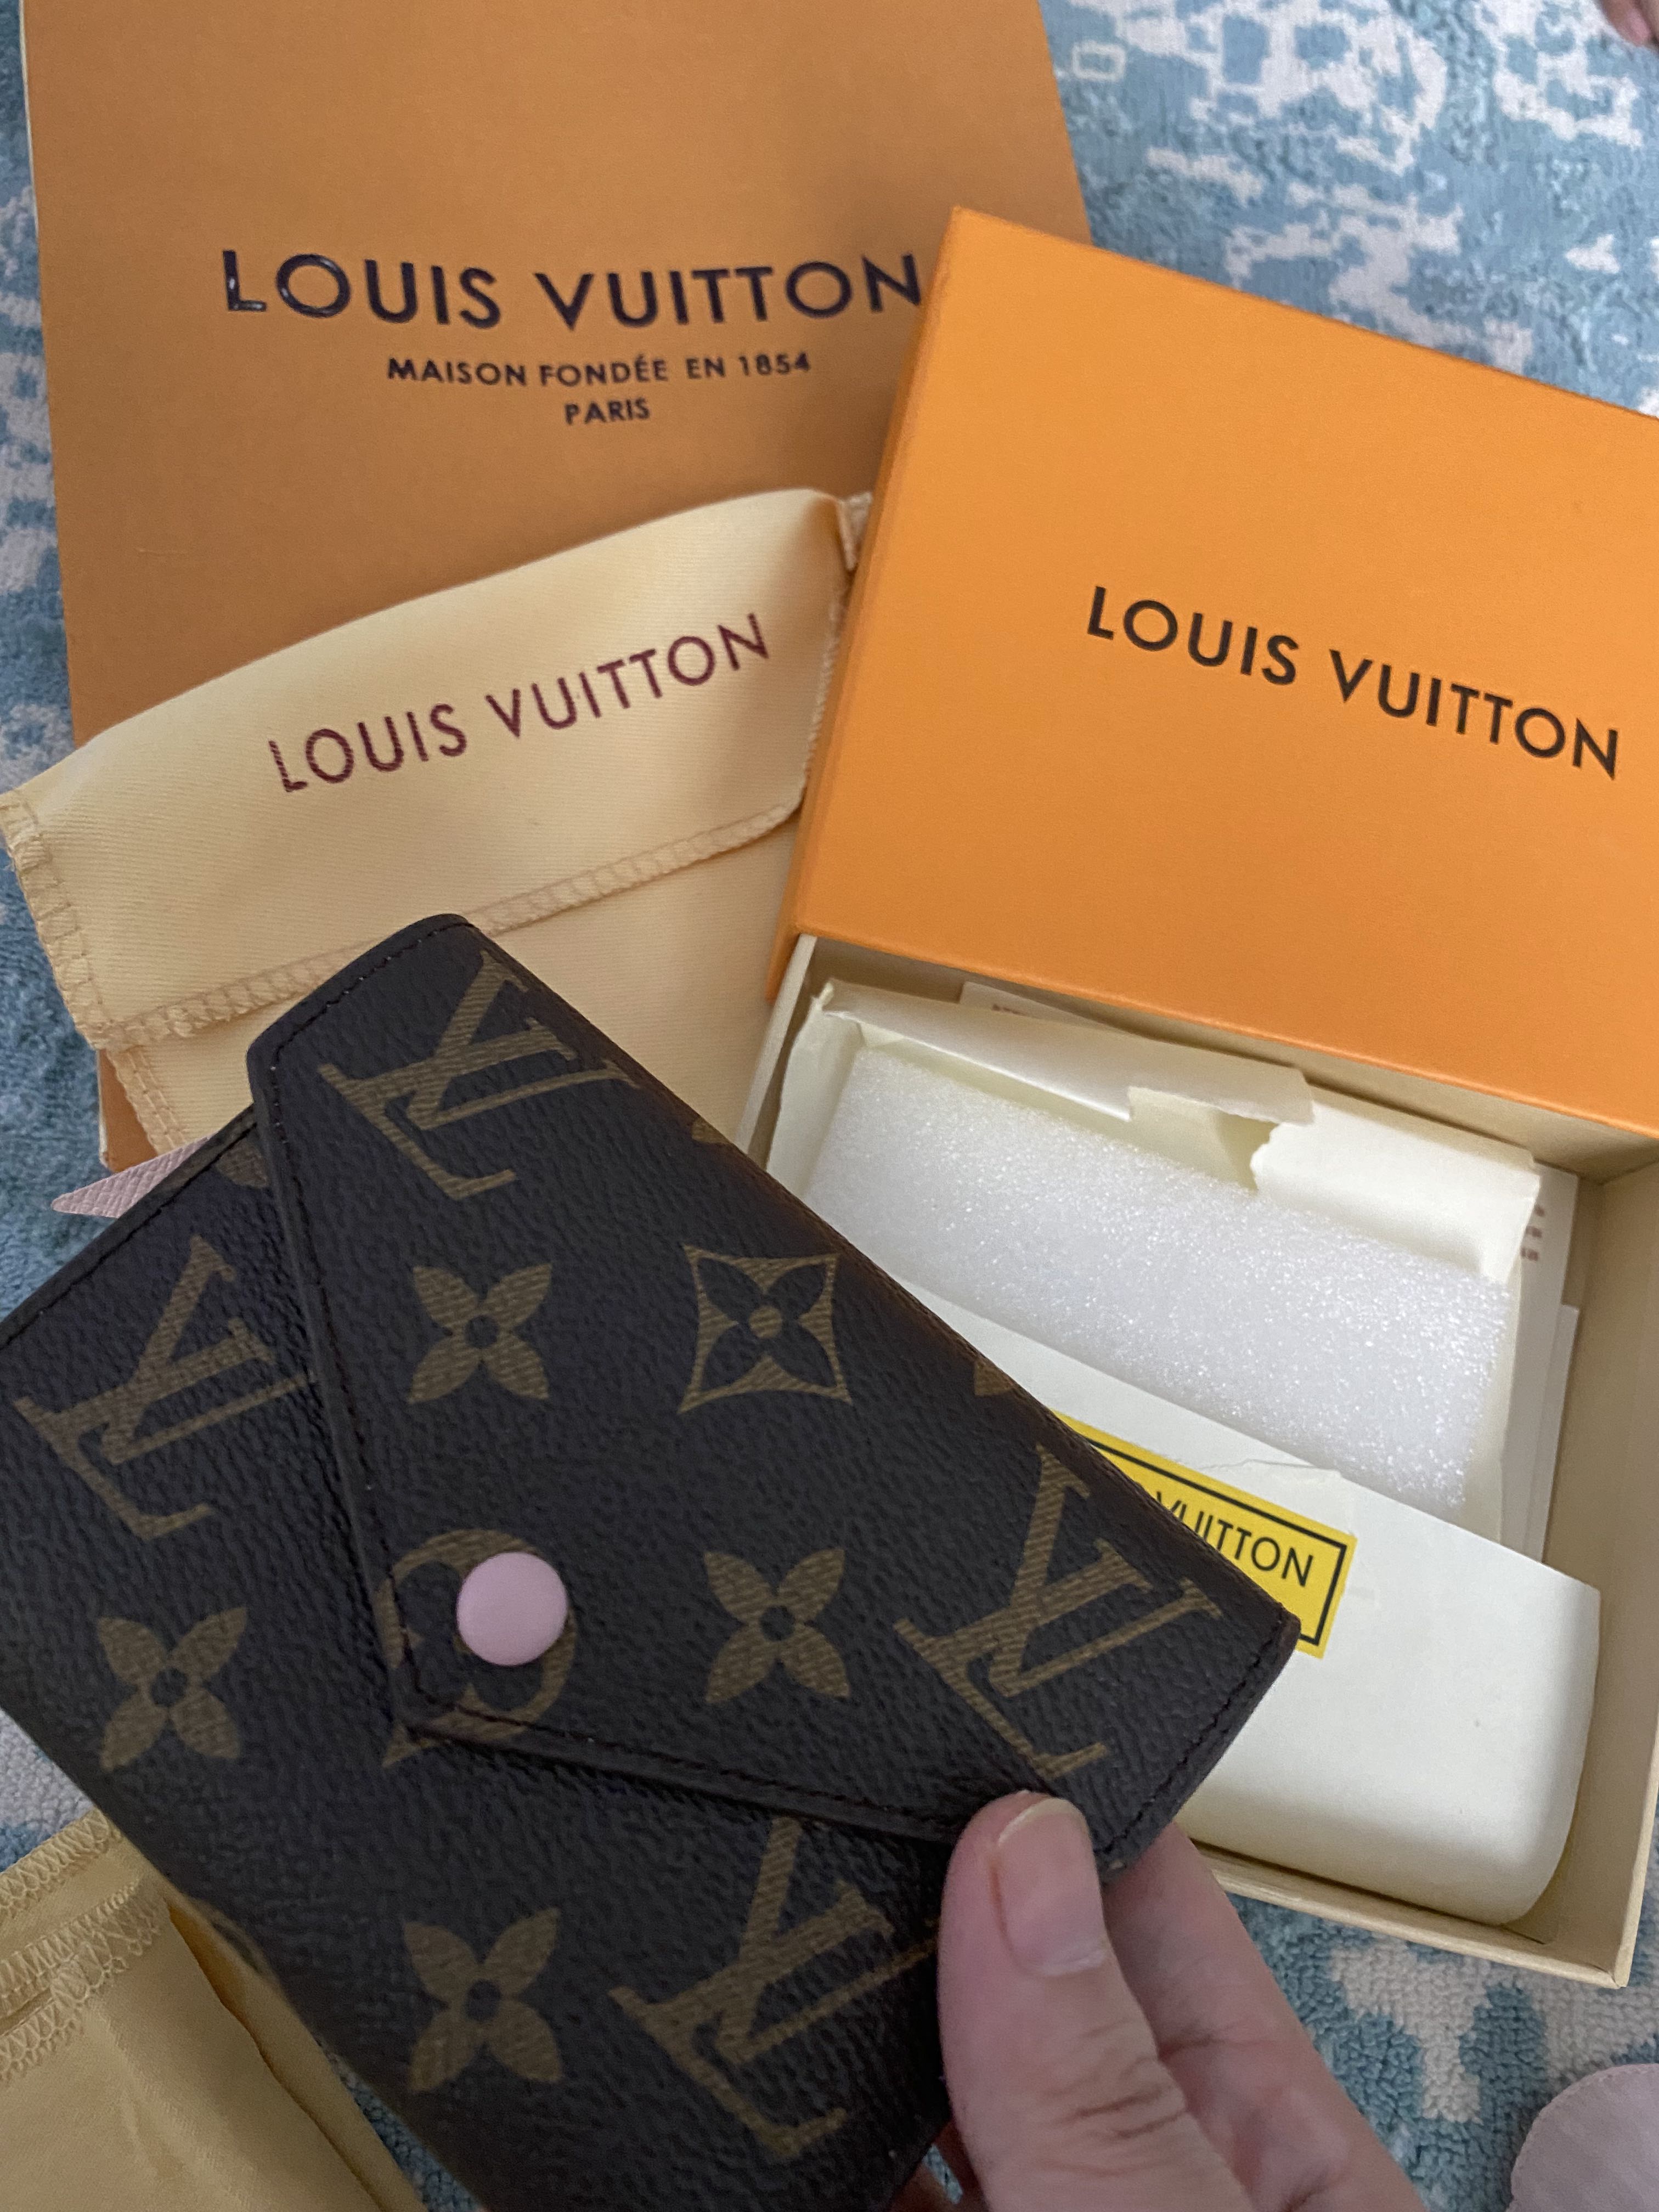 Multi Pochette Accessoires Monogram  Women  Handbags  LOUIS VUITTON 